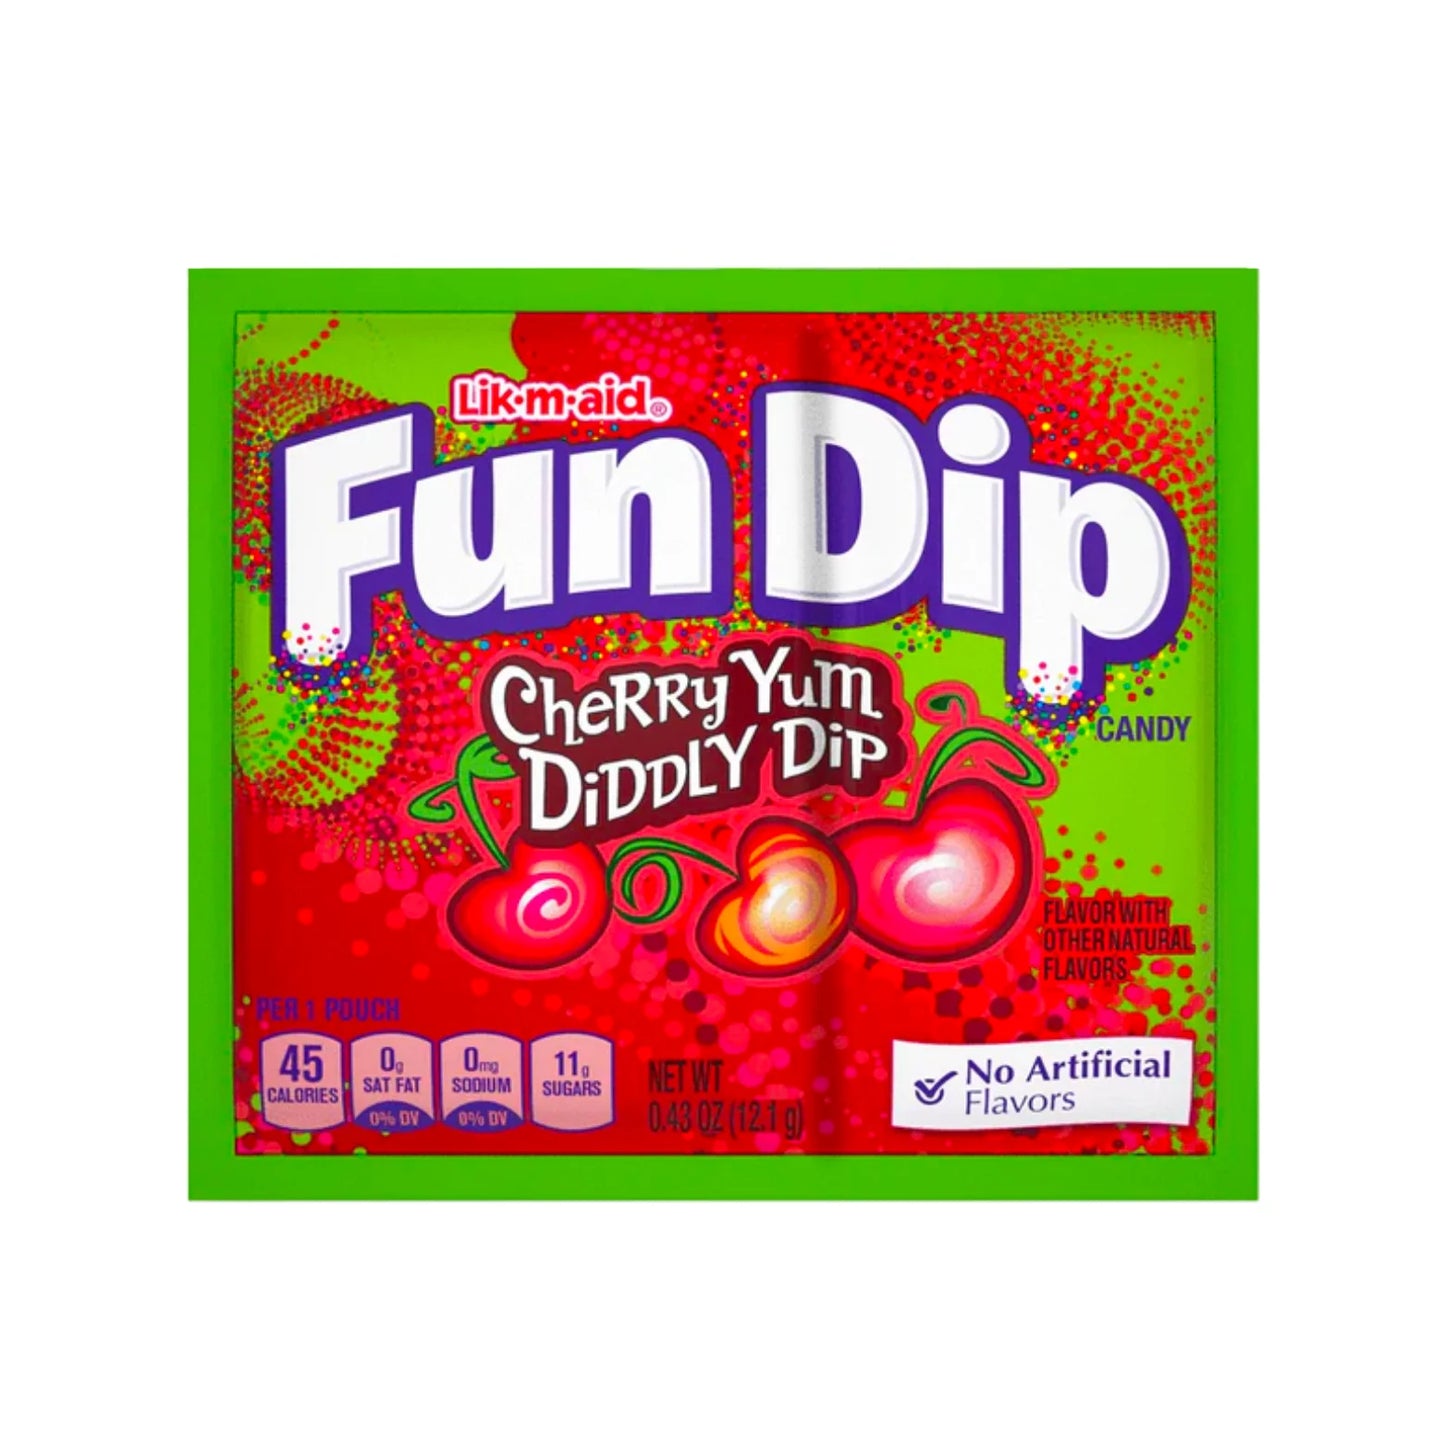 Lik-m-aid - Fun Dip Cherry Yum Diddly Dip